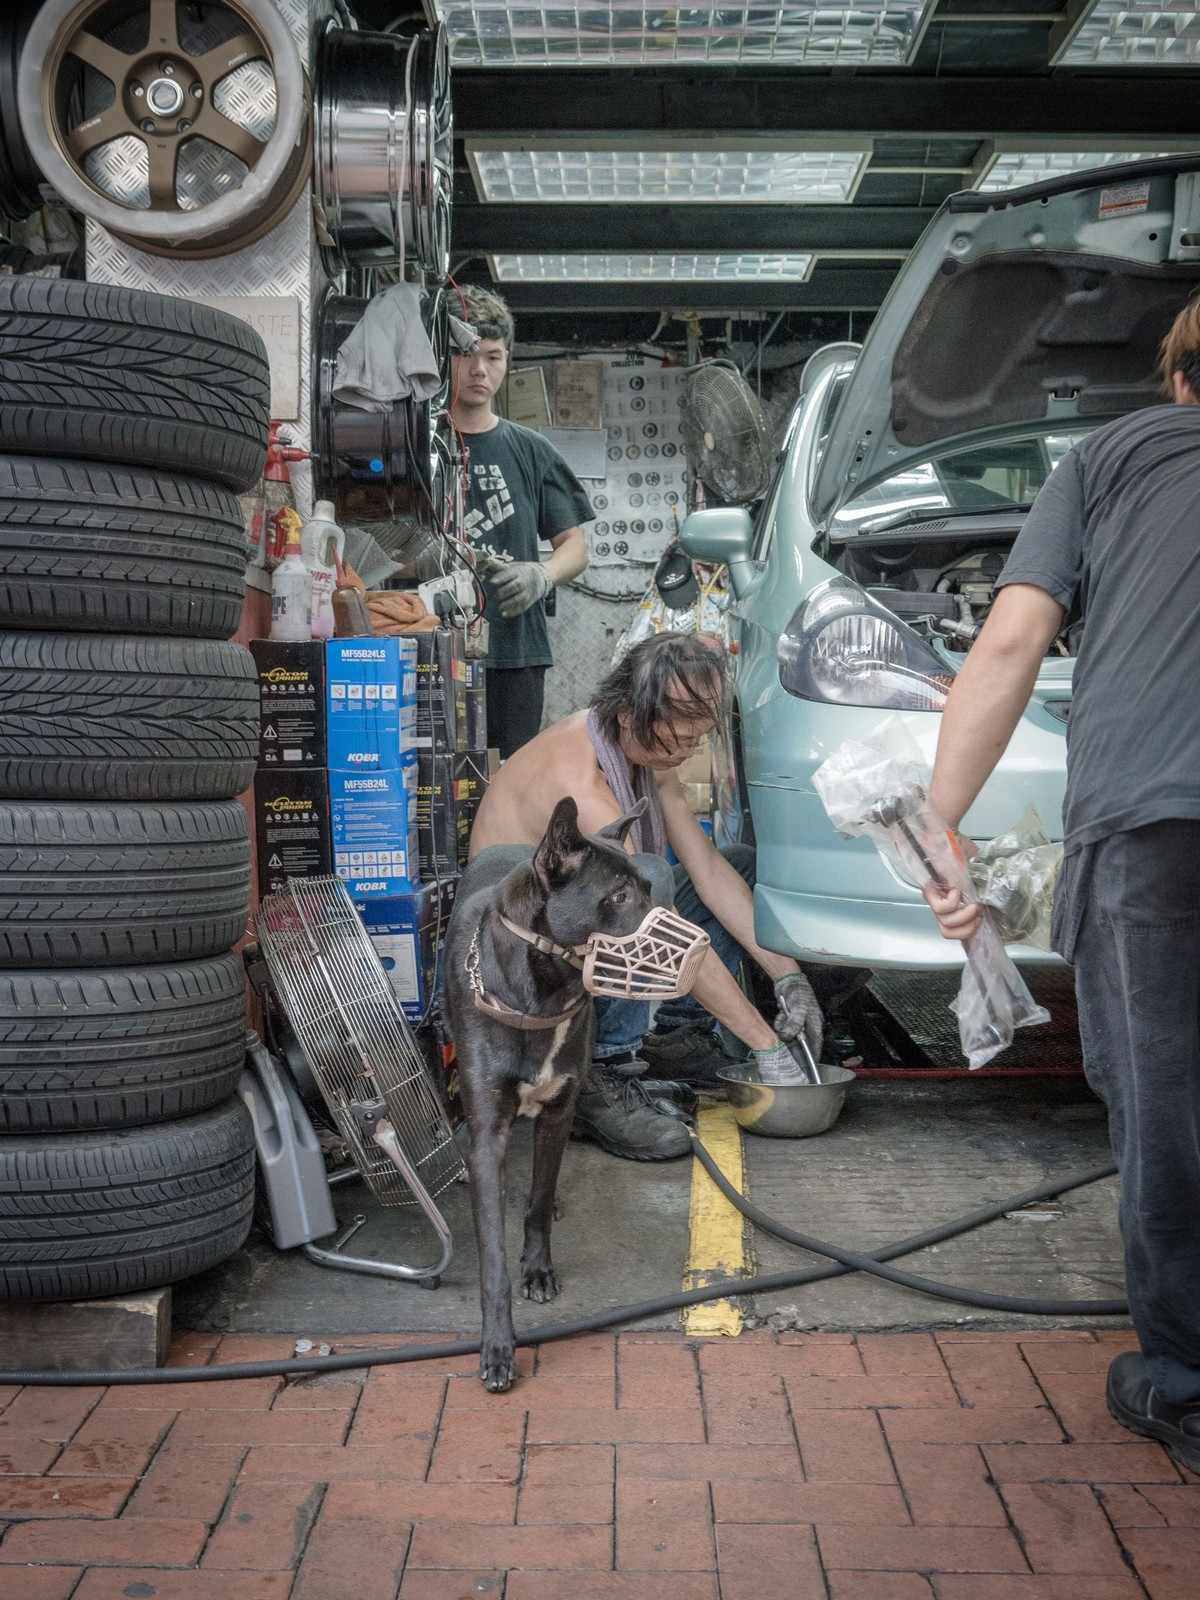 Фотографии собак в гаражах Гонконга